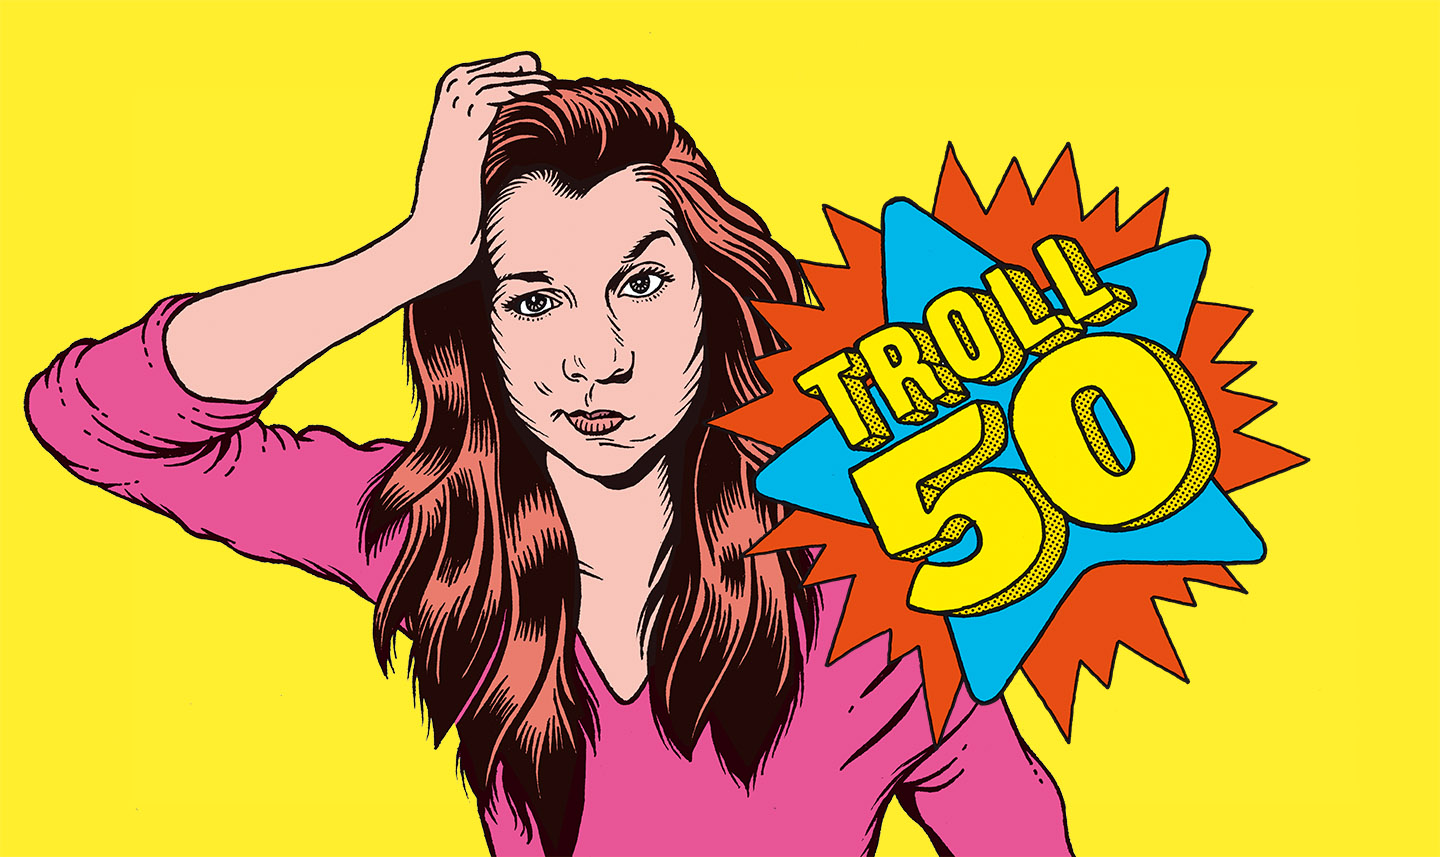 Klaire fait Grr a imaginé Troll 50 pour Arte Radio, un podcast dans lequel elle dialogue avec une chanson.